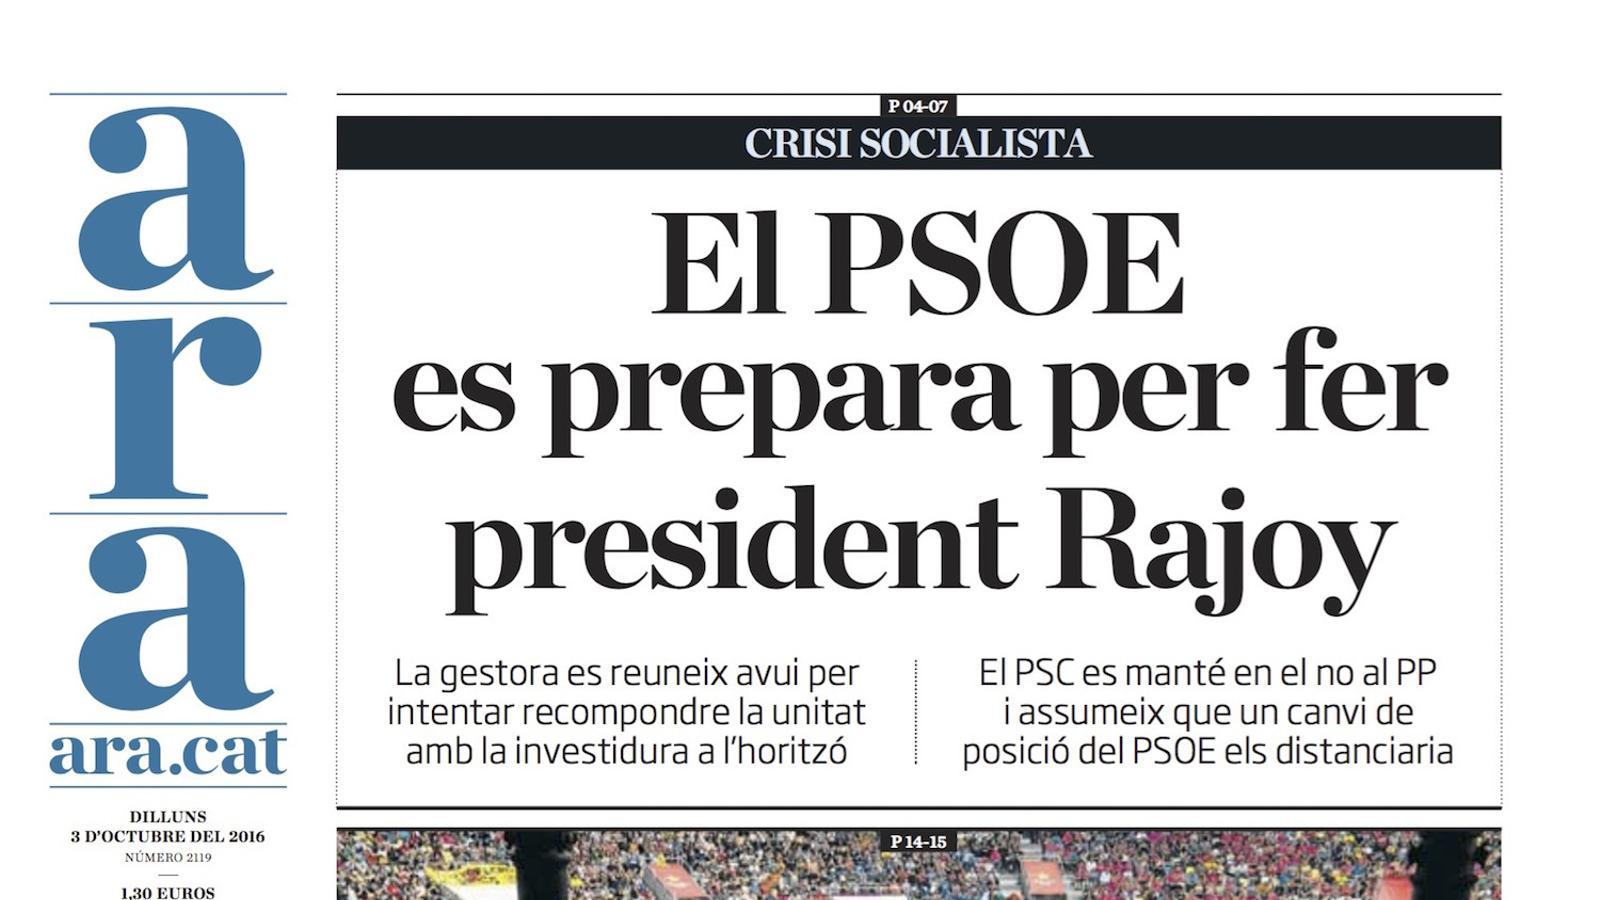 "El PSOE es prepara per fer president Rajoy", portada de l'ARA